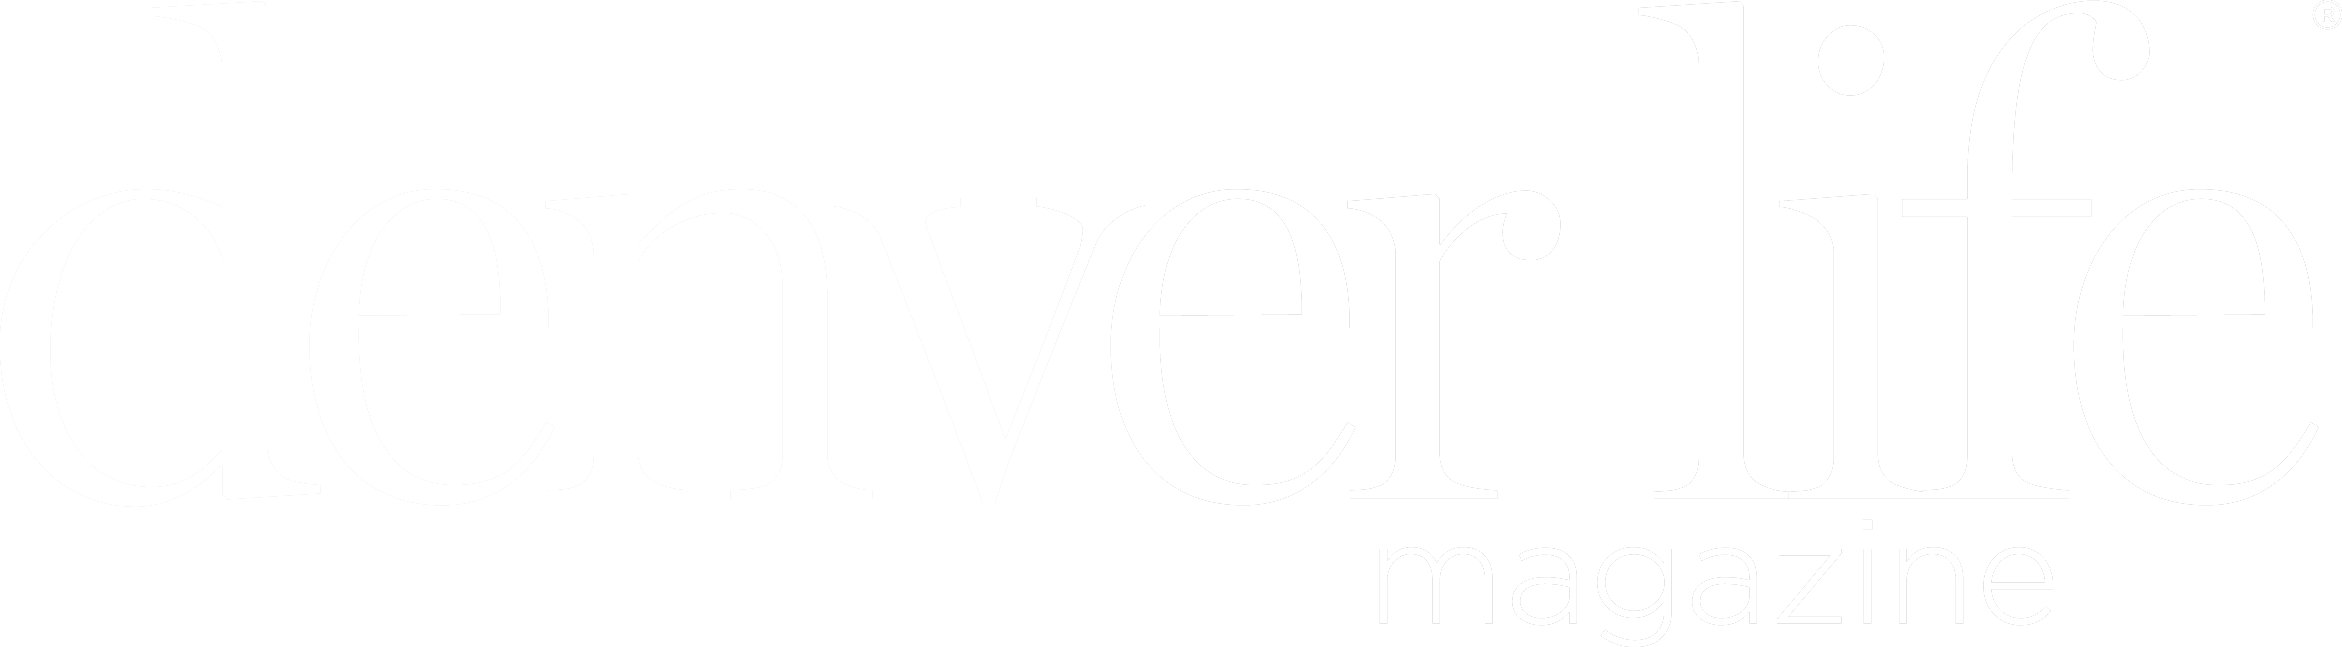 denver life logo white